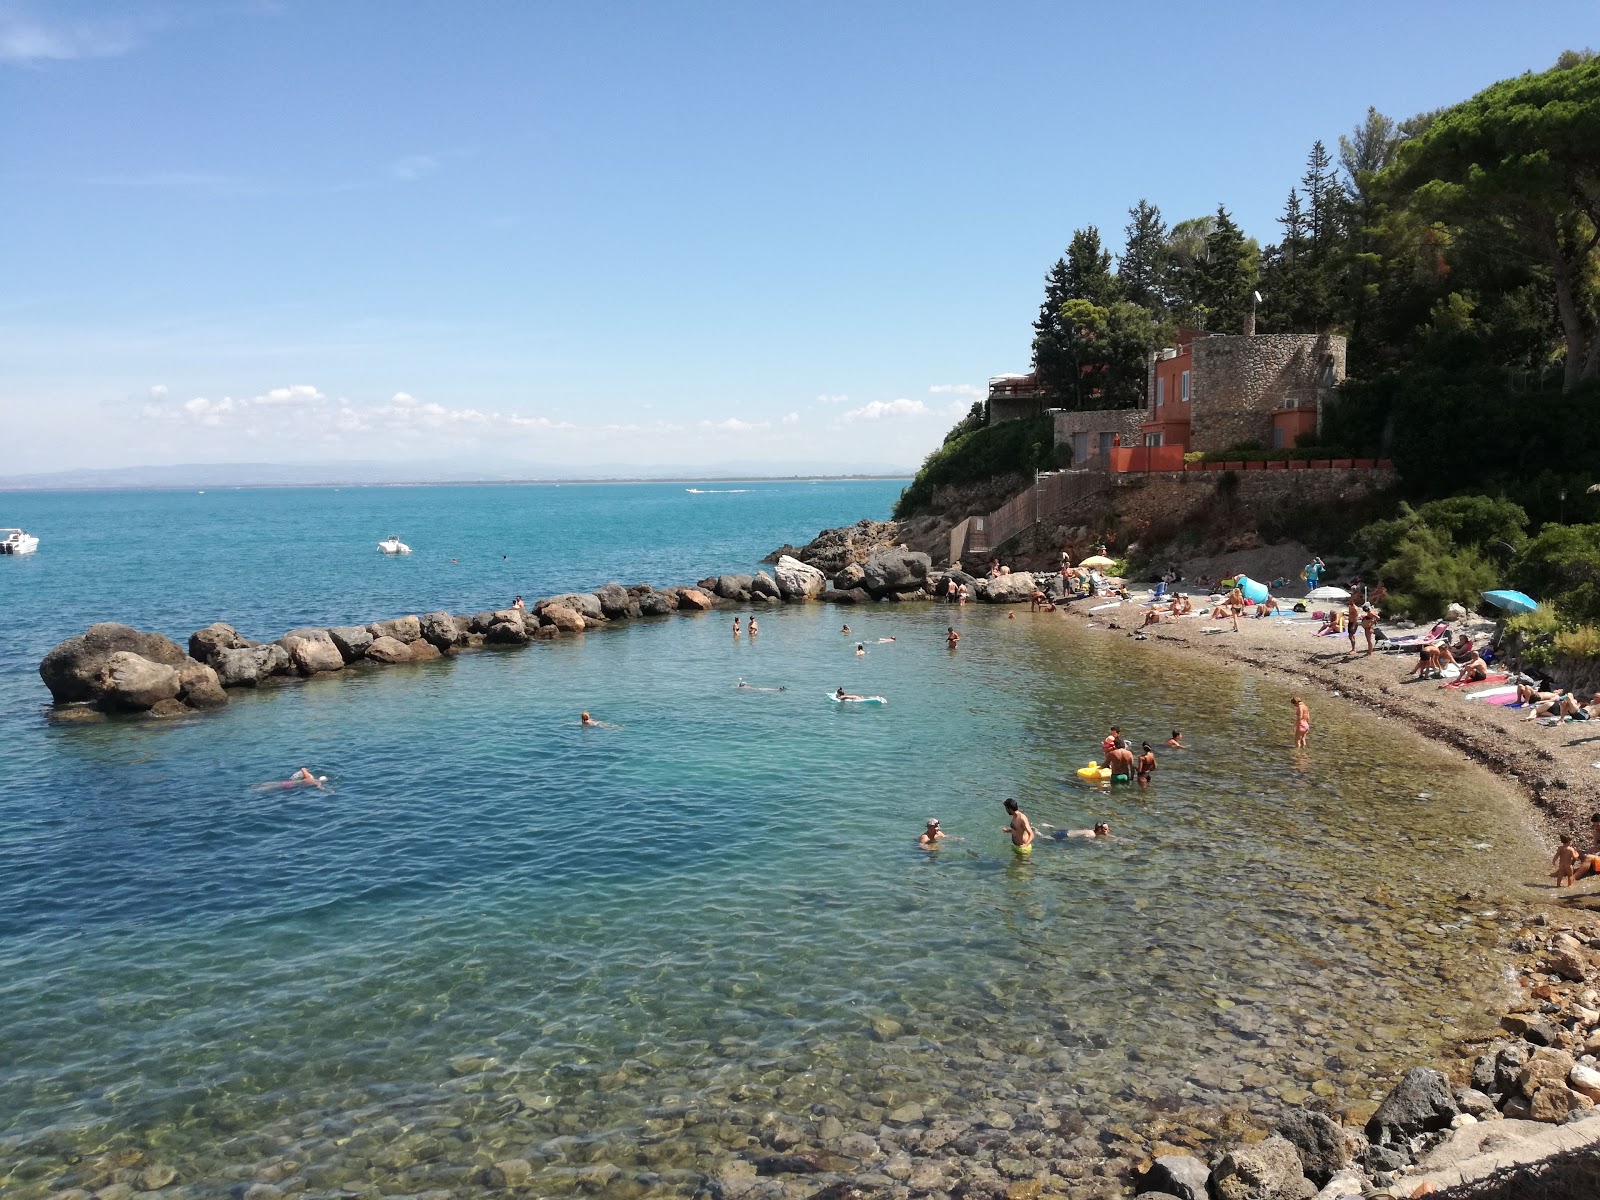 Spiaggia della Bionda的照片 带有灰色沙和岩石表面